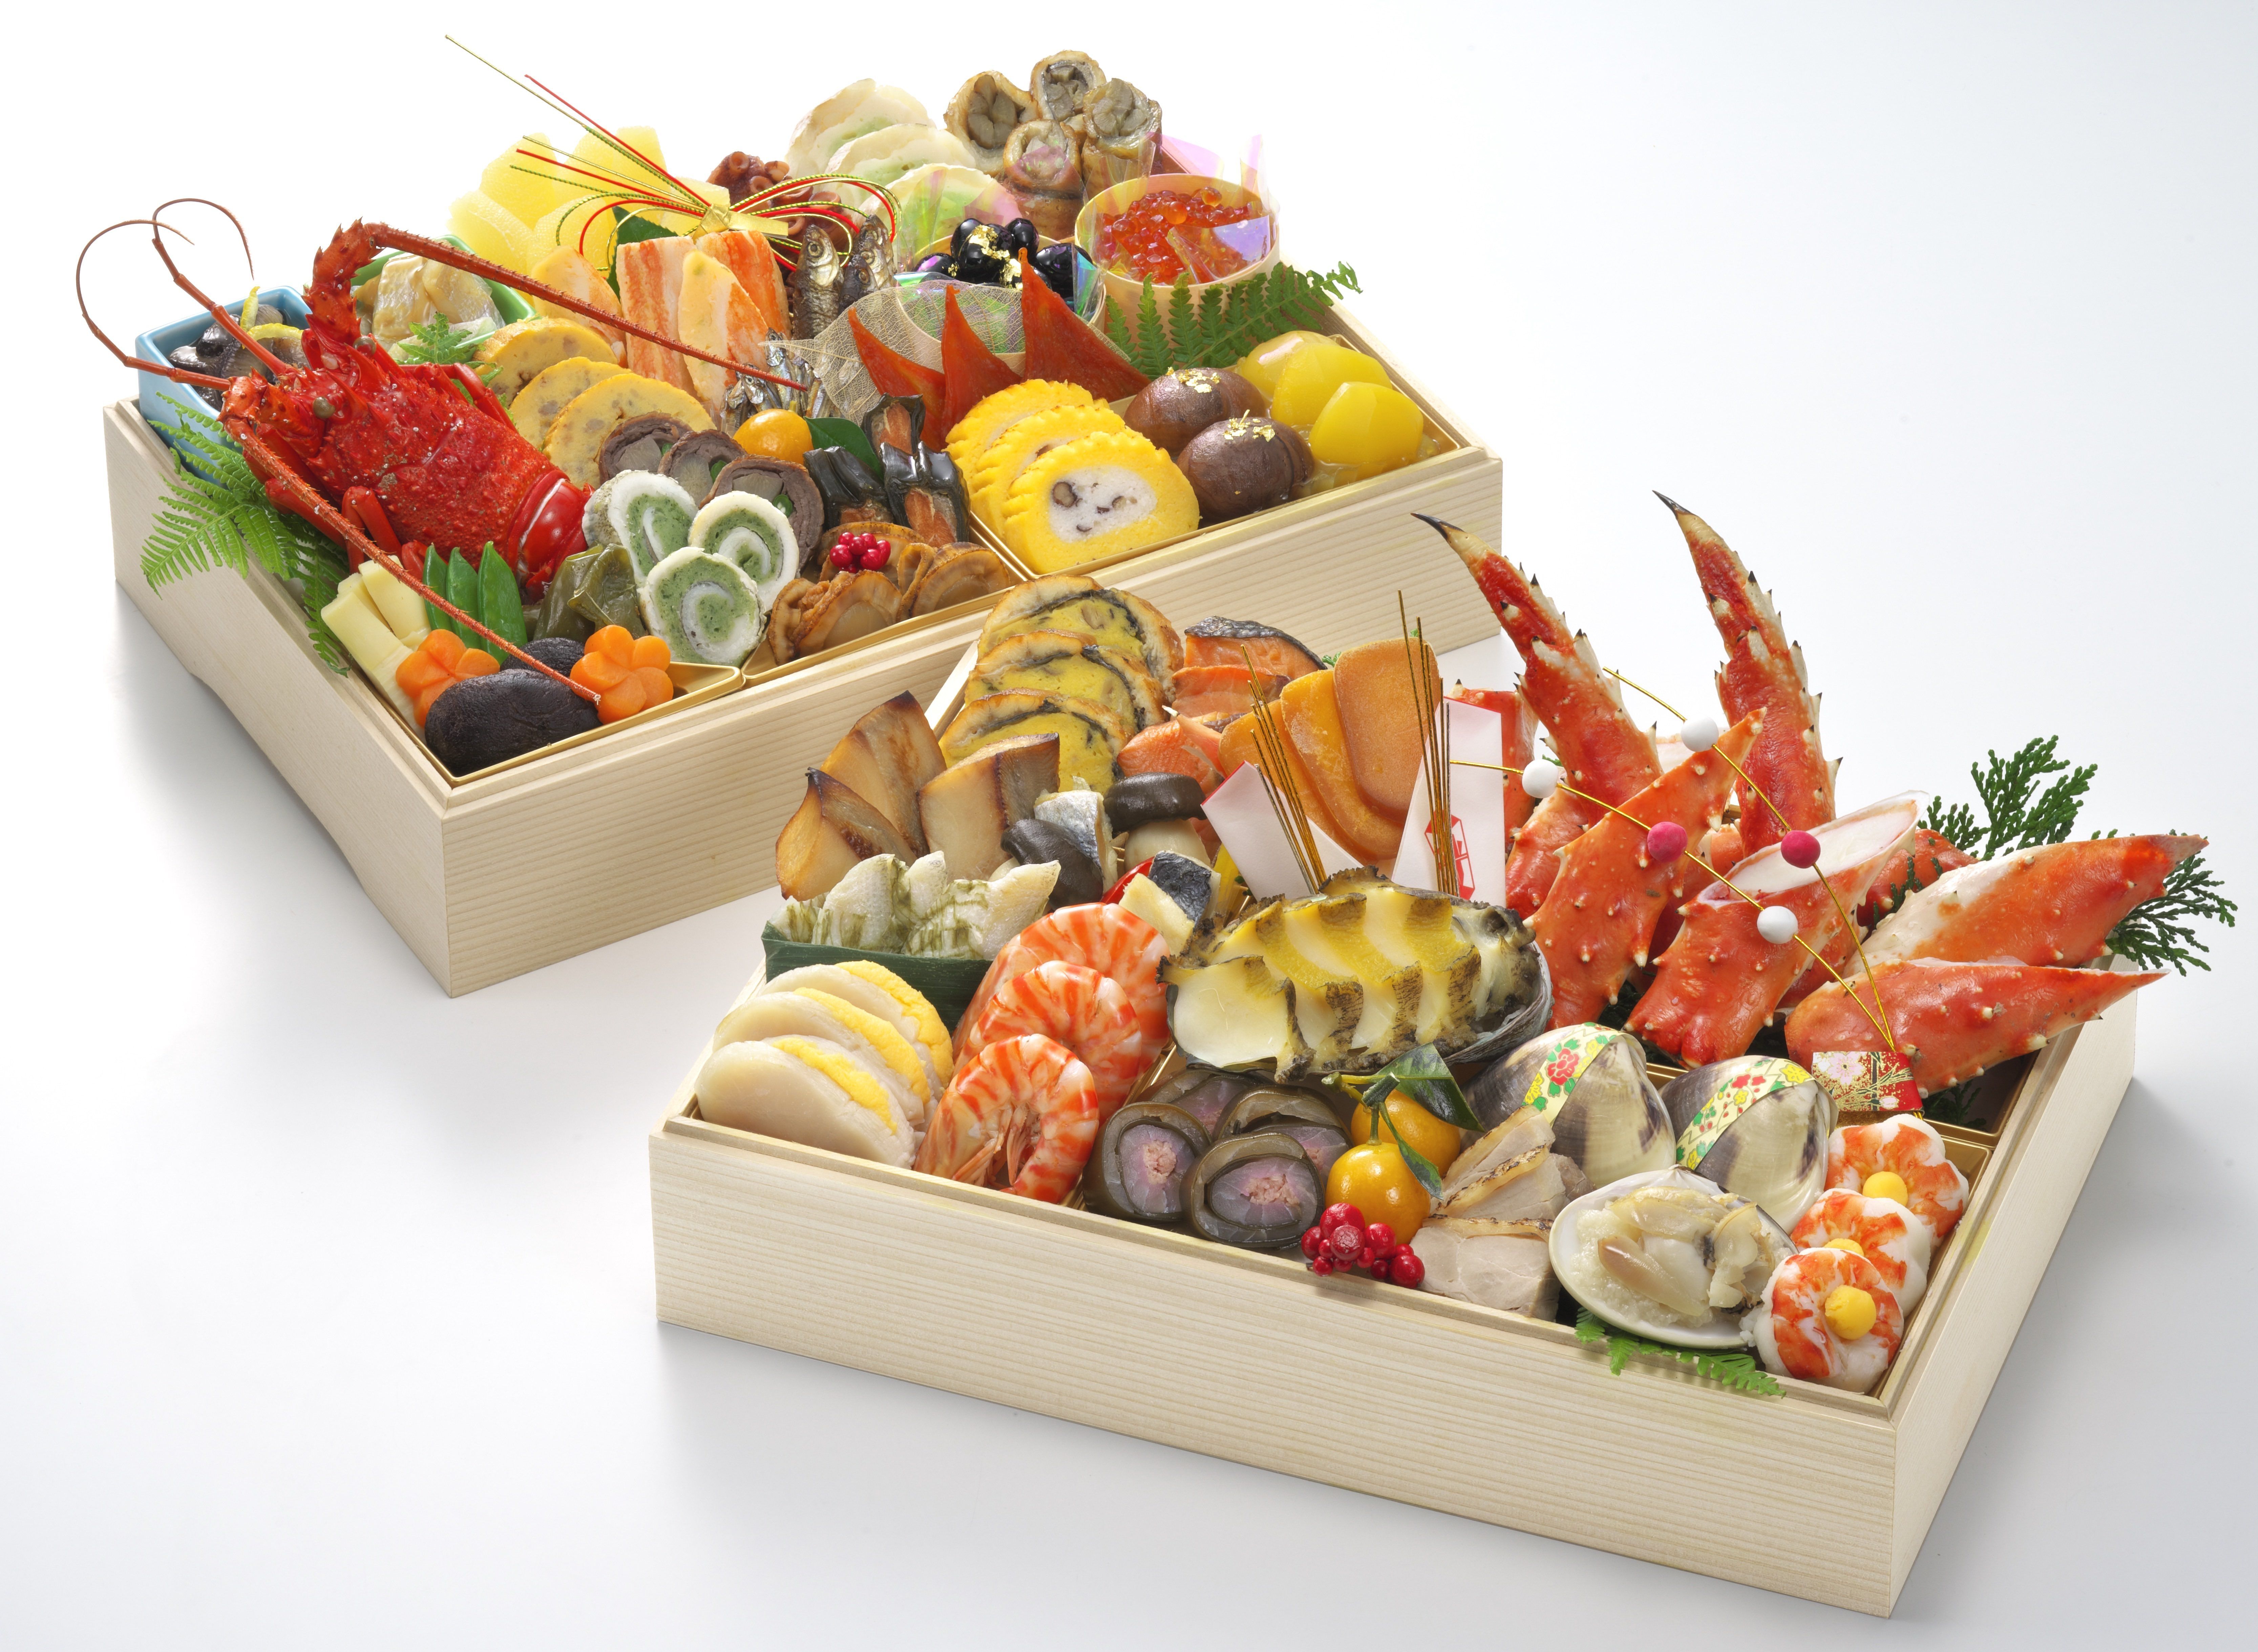 最高級の本たらば蟹がぎっしり 老舗かに料理専門店を運営する 甲羅 が10月1日よりおせち販売を開始 株式会社甲羅のプレスリリース